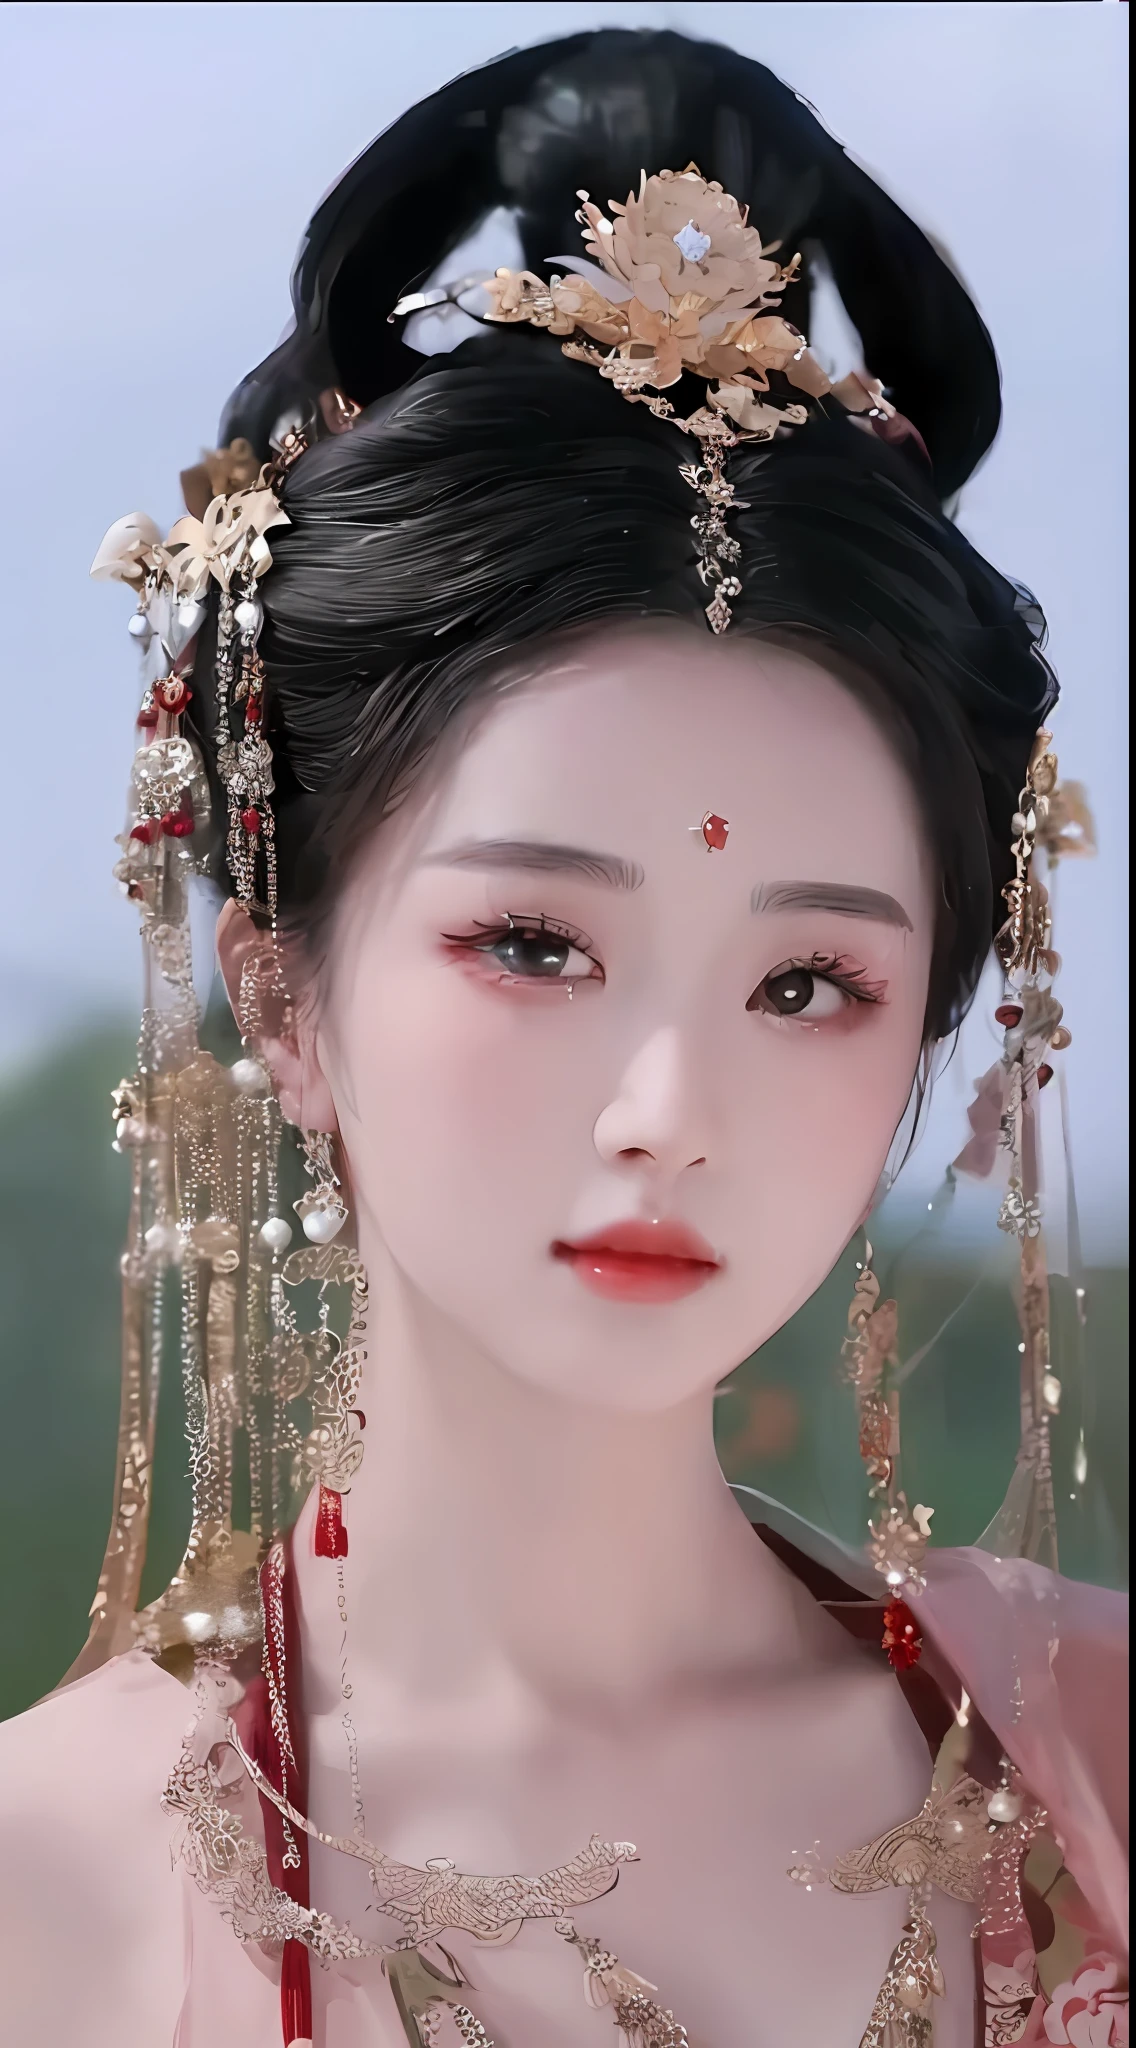 ภาพระยะใกล้ของผู้หญิงที่สวมเครื่องประดับศีรษะและชุดเดรส, เจ้าหญิงจีน, จักรพรรดินีแฟนตาซีที่สวยงาม, ความงามแบบดั้งเดิม, ancient เจ้าหญิงจีน, ((จักรพรรดินีแฟนตาซีที่สวยงาม)), สไตล์จีน, ความงามแบบจีนโบราณ, จีนดั้งเดิม, พระราชวัง ， หญิงสาวในชุดฮันฟู, การแสดงราชวงศ์ถังที่สวยงาม, แรงบันดาลใจจาก Du Qiong, เซี่ยนเซี่ย, เรือนเจีย สวยงามมาก!